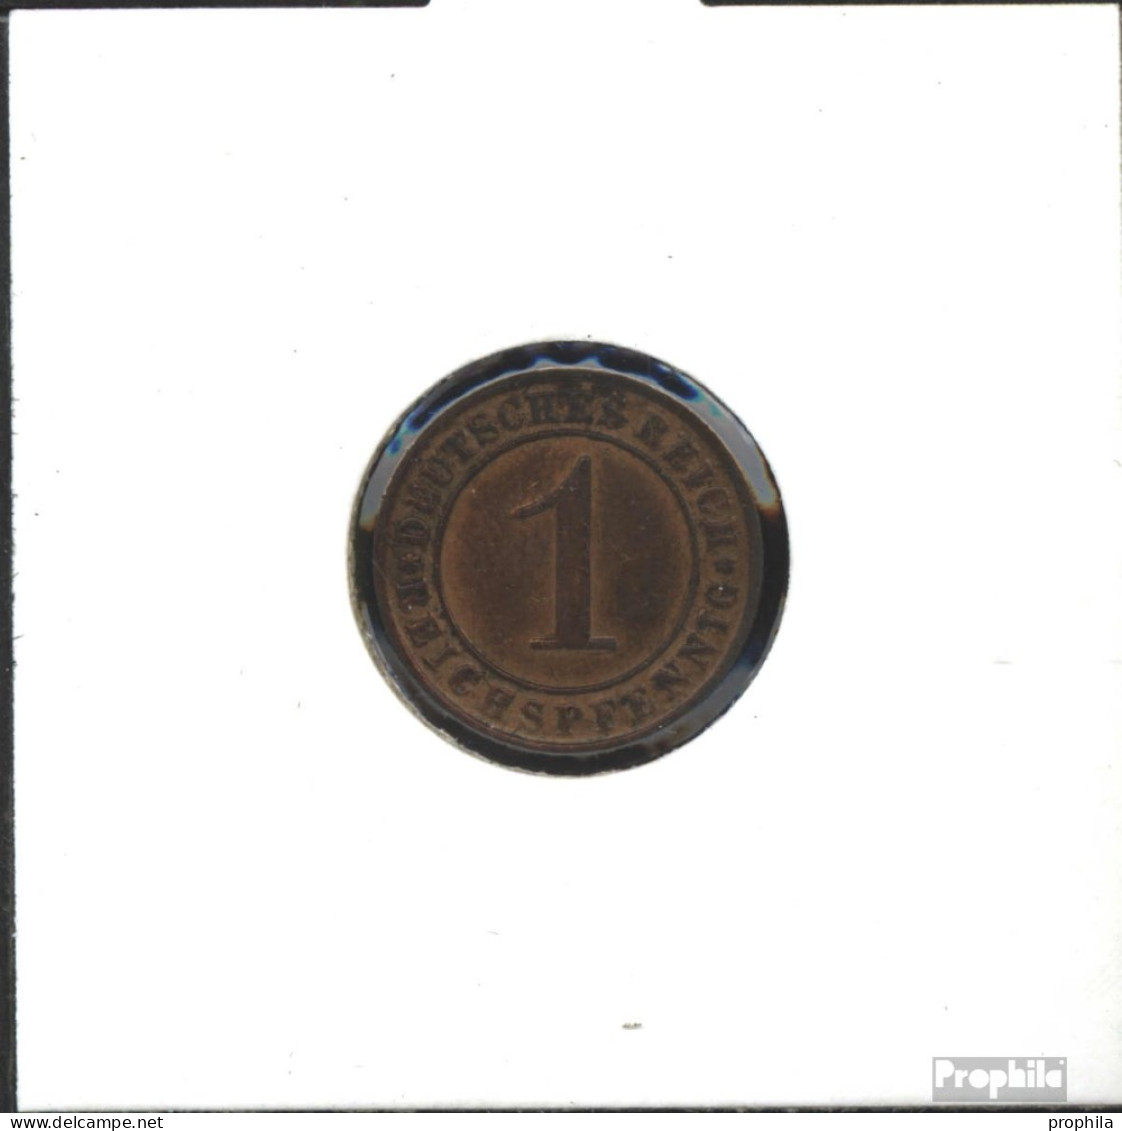 Deutsches Reich Jägernr: 313 1928 F Vorzüglich Bronze Vorzüglich 1928 1 Reichspfennig Ährengarbe - 1 Rentenpfennig & 1 Reichspfennig